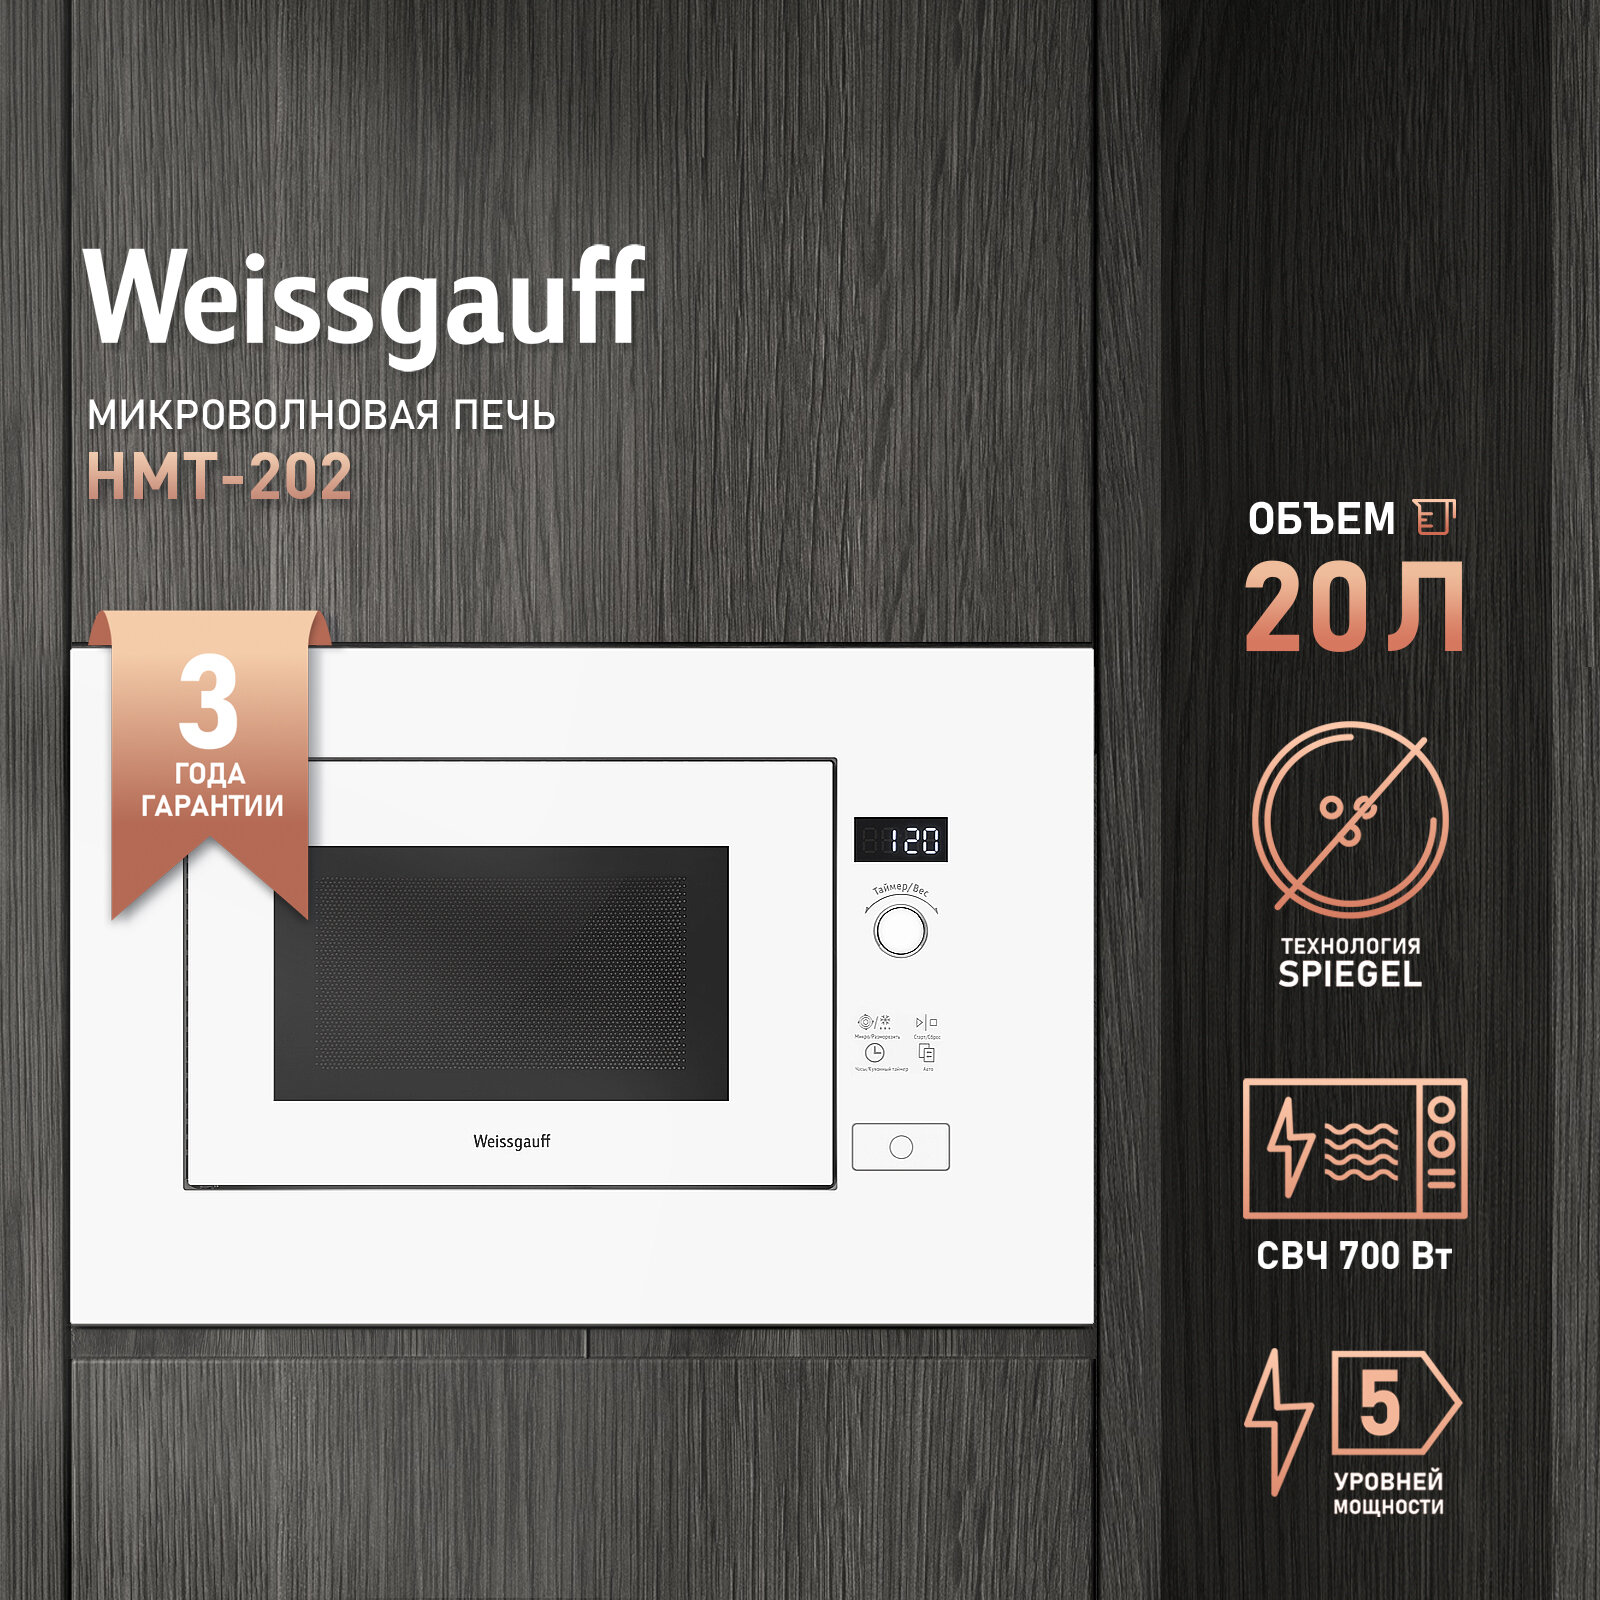 Встраиваемая микроволновая печь без поворотного стола Weissgauff HMT-202 3 года гарантии, Объем 20 литров, Разморозка по весу, Блокировка от детей